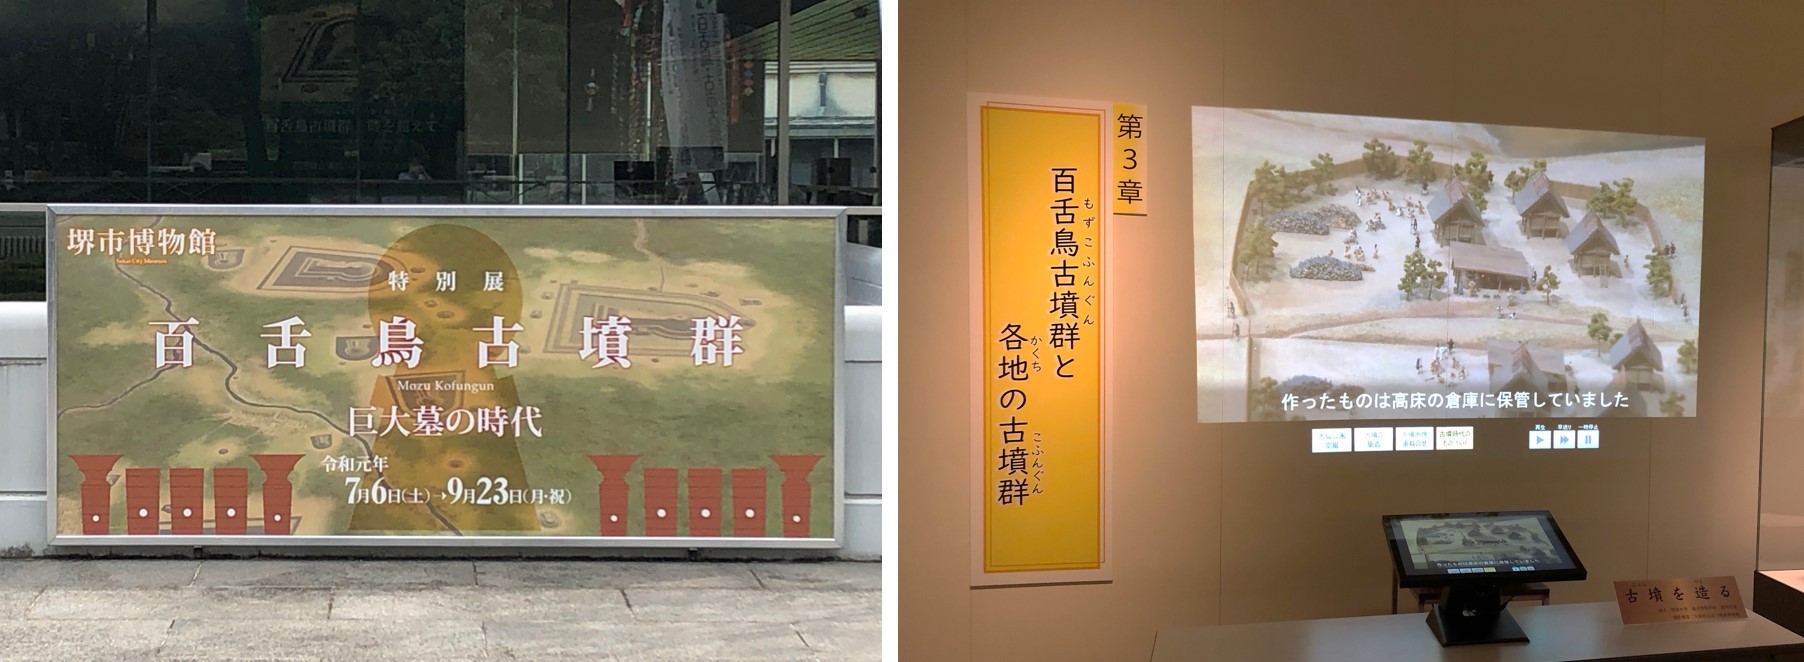 堺市博物館 特別展での映像コンテンツ展示